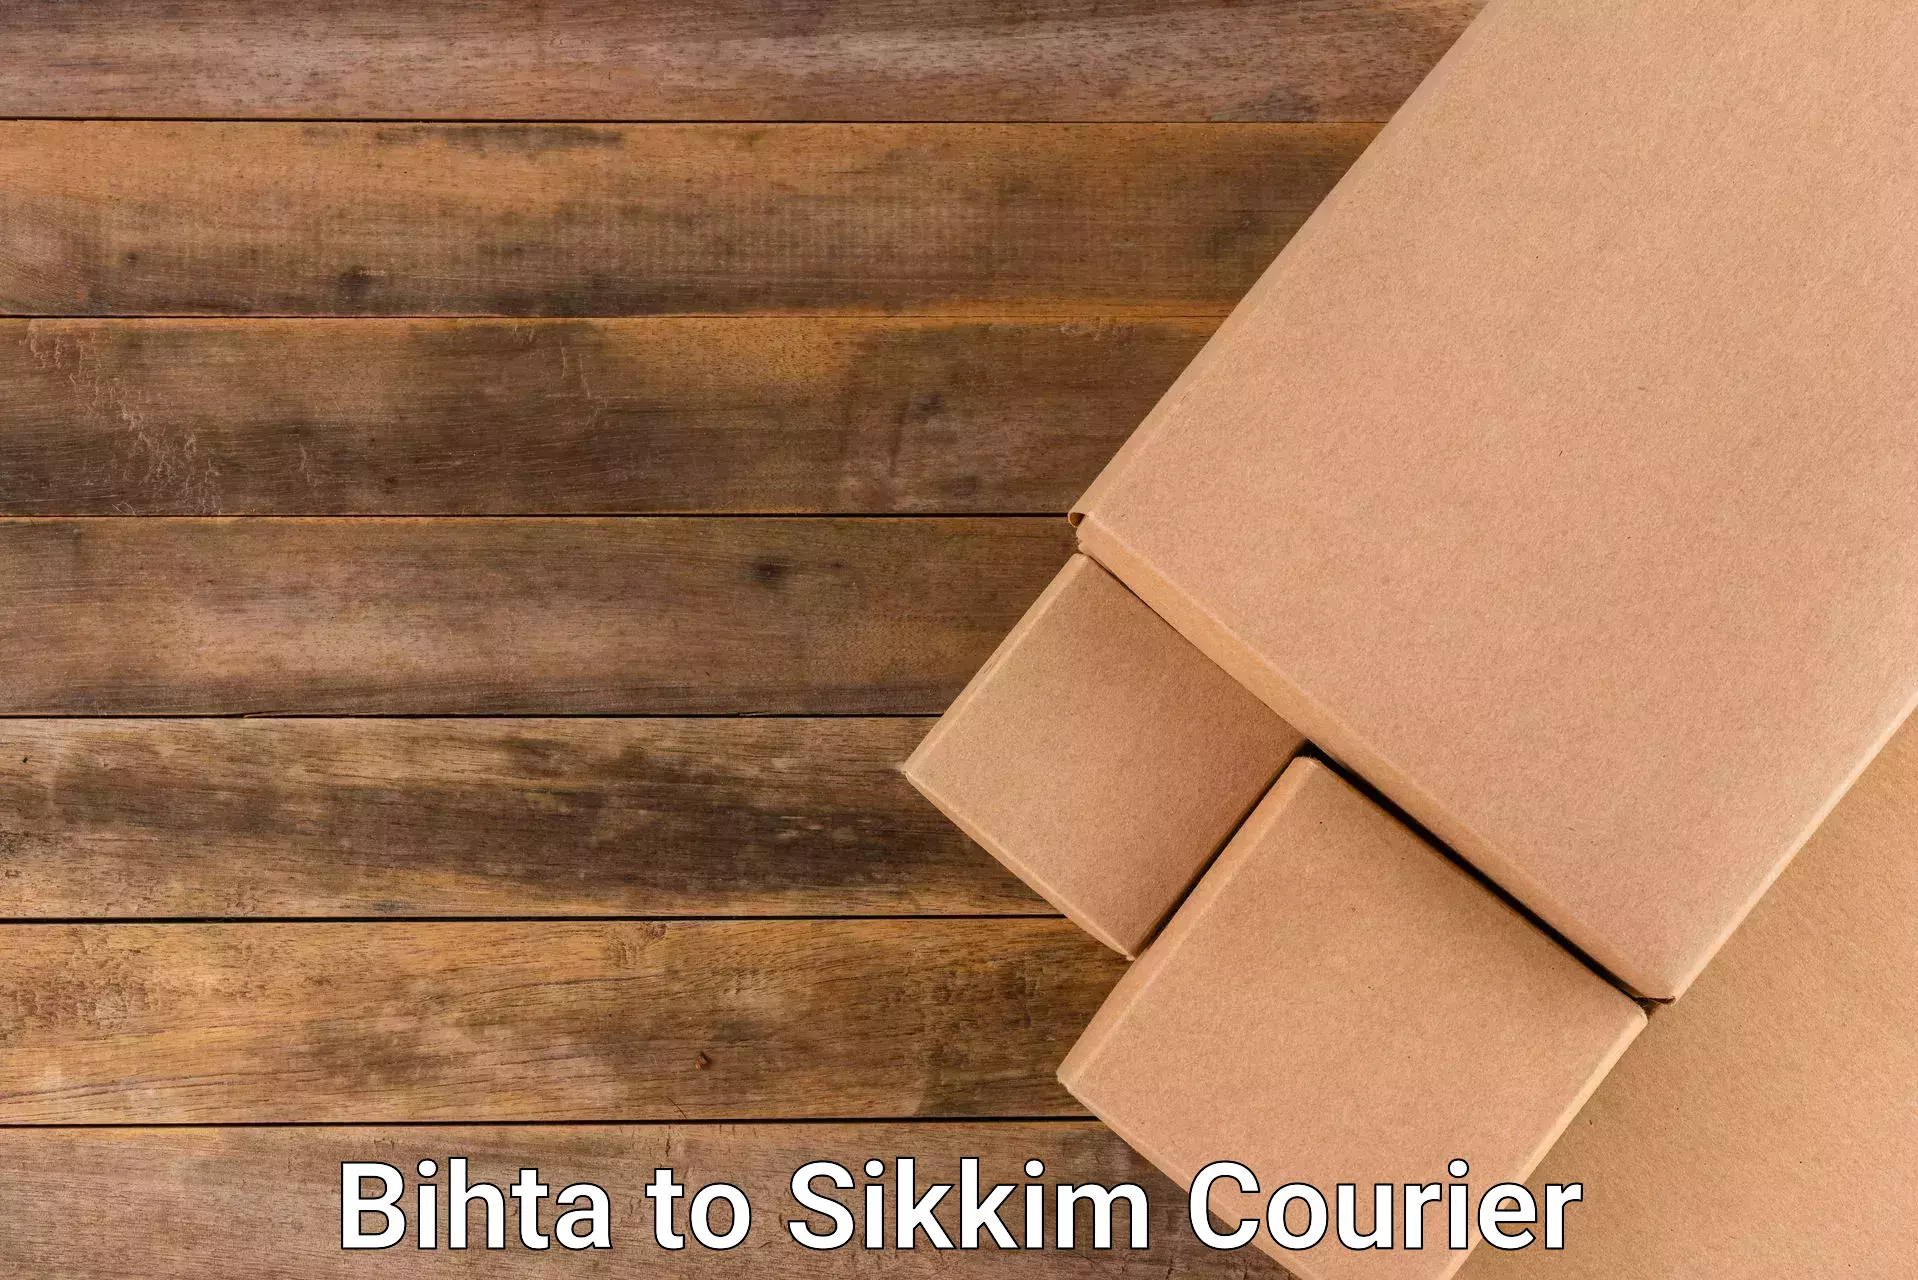 Bulk shipment Bihta to Singtam